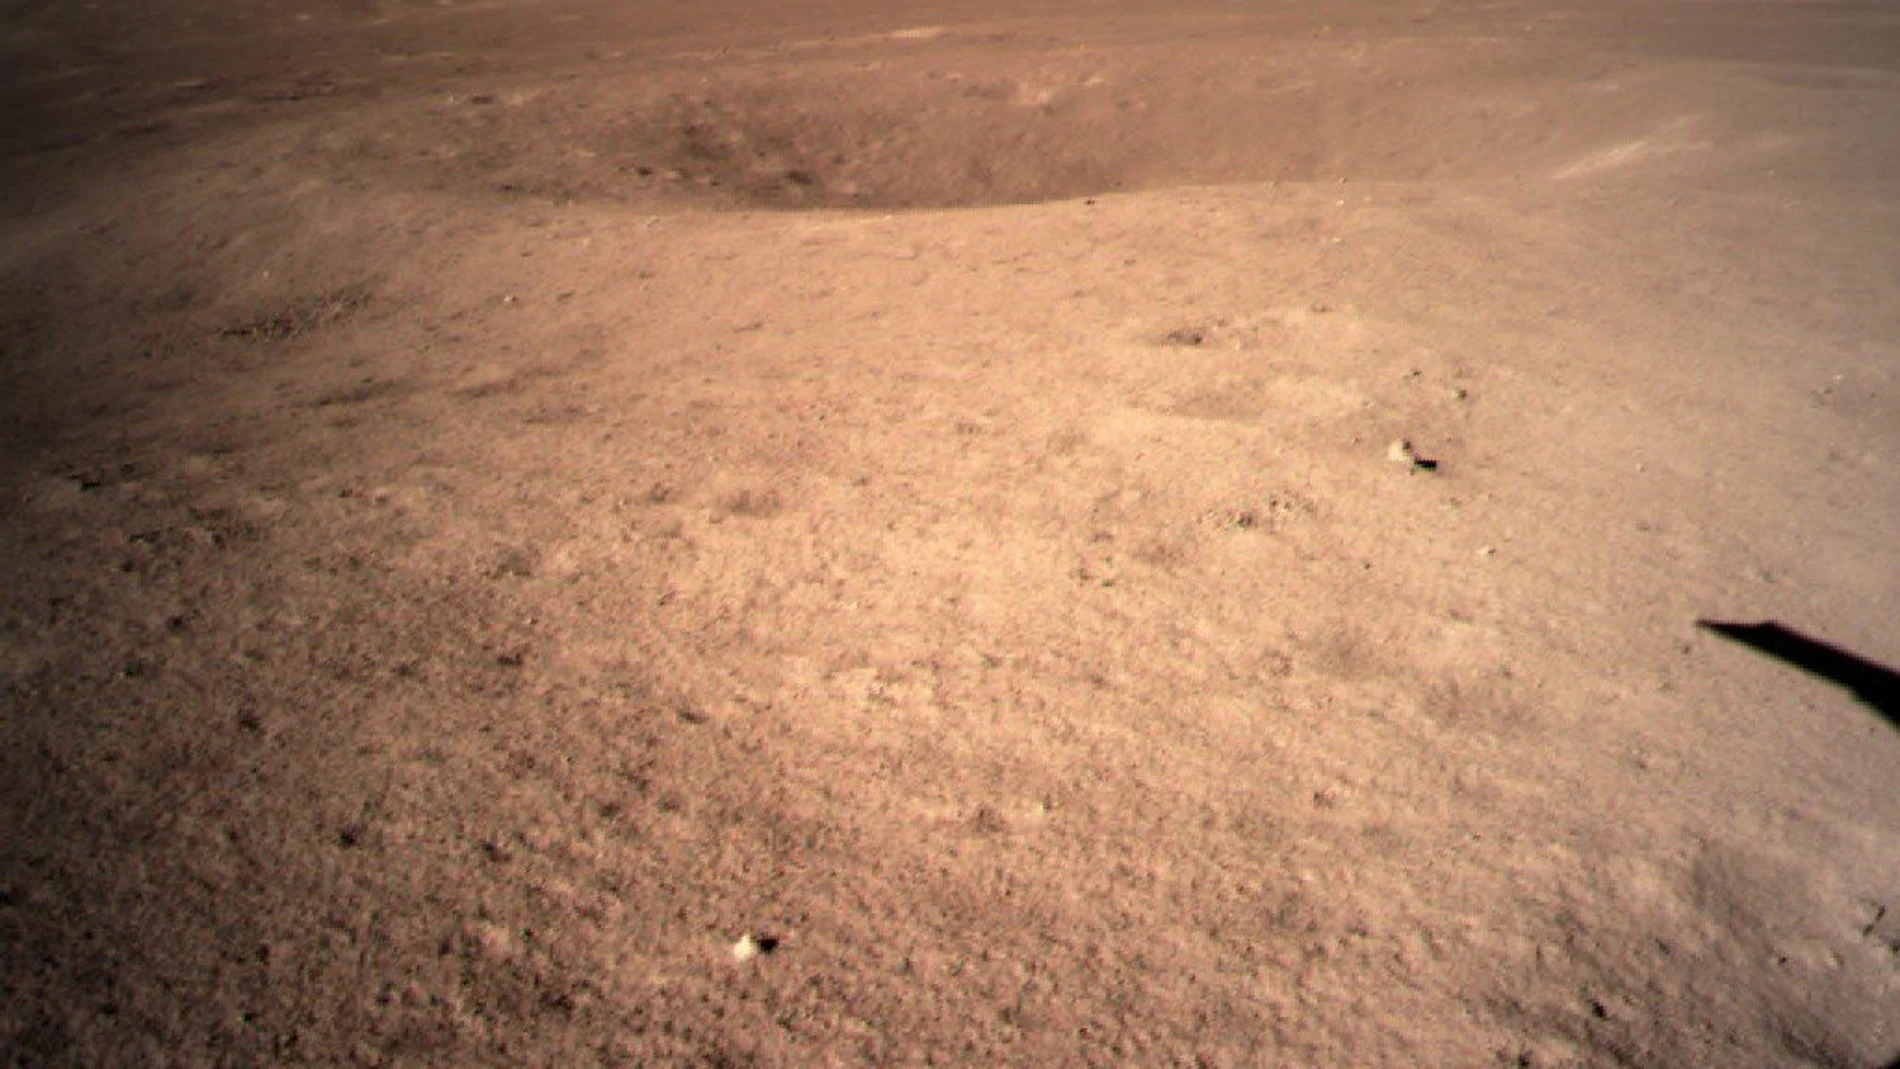 Primera instantánea de la cara oculta de la luna captada por la sonda Chang'e 4. Administración Espacial Nacional China